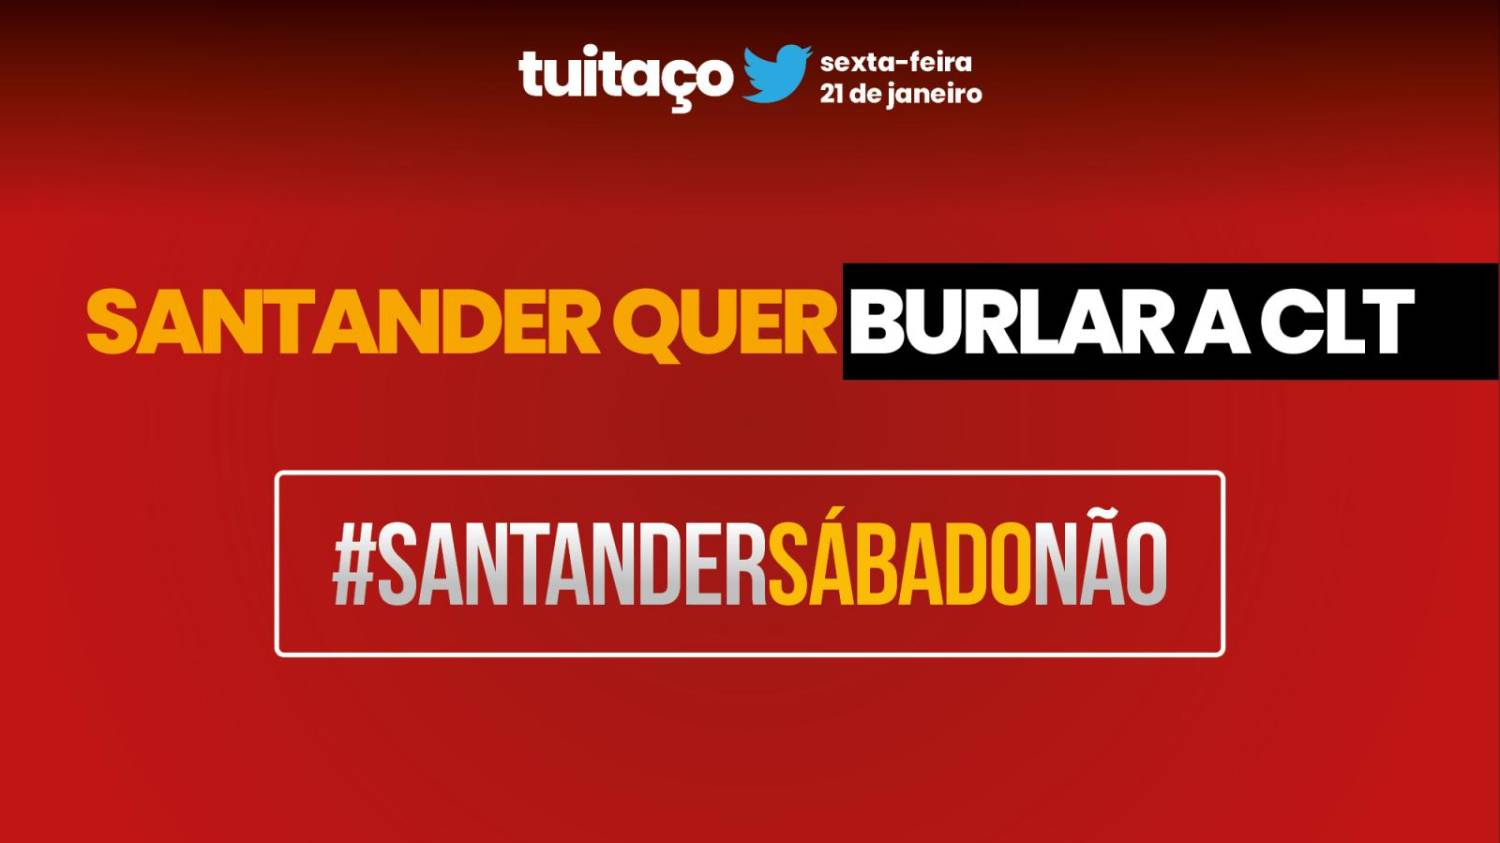 Tuitaço contra abertura do Santander aos sábados nesta sexta 21